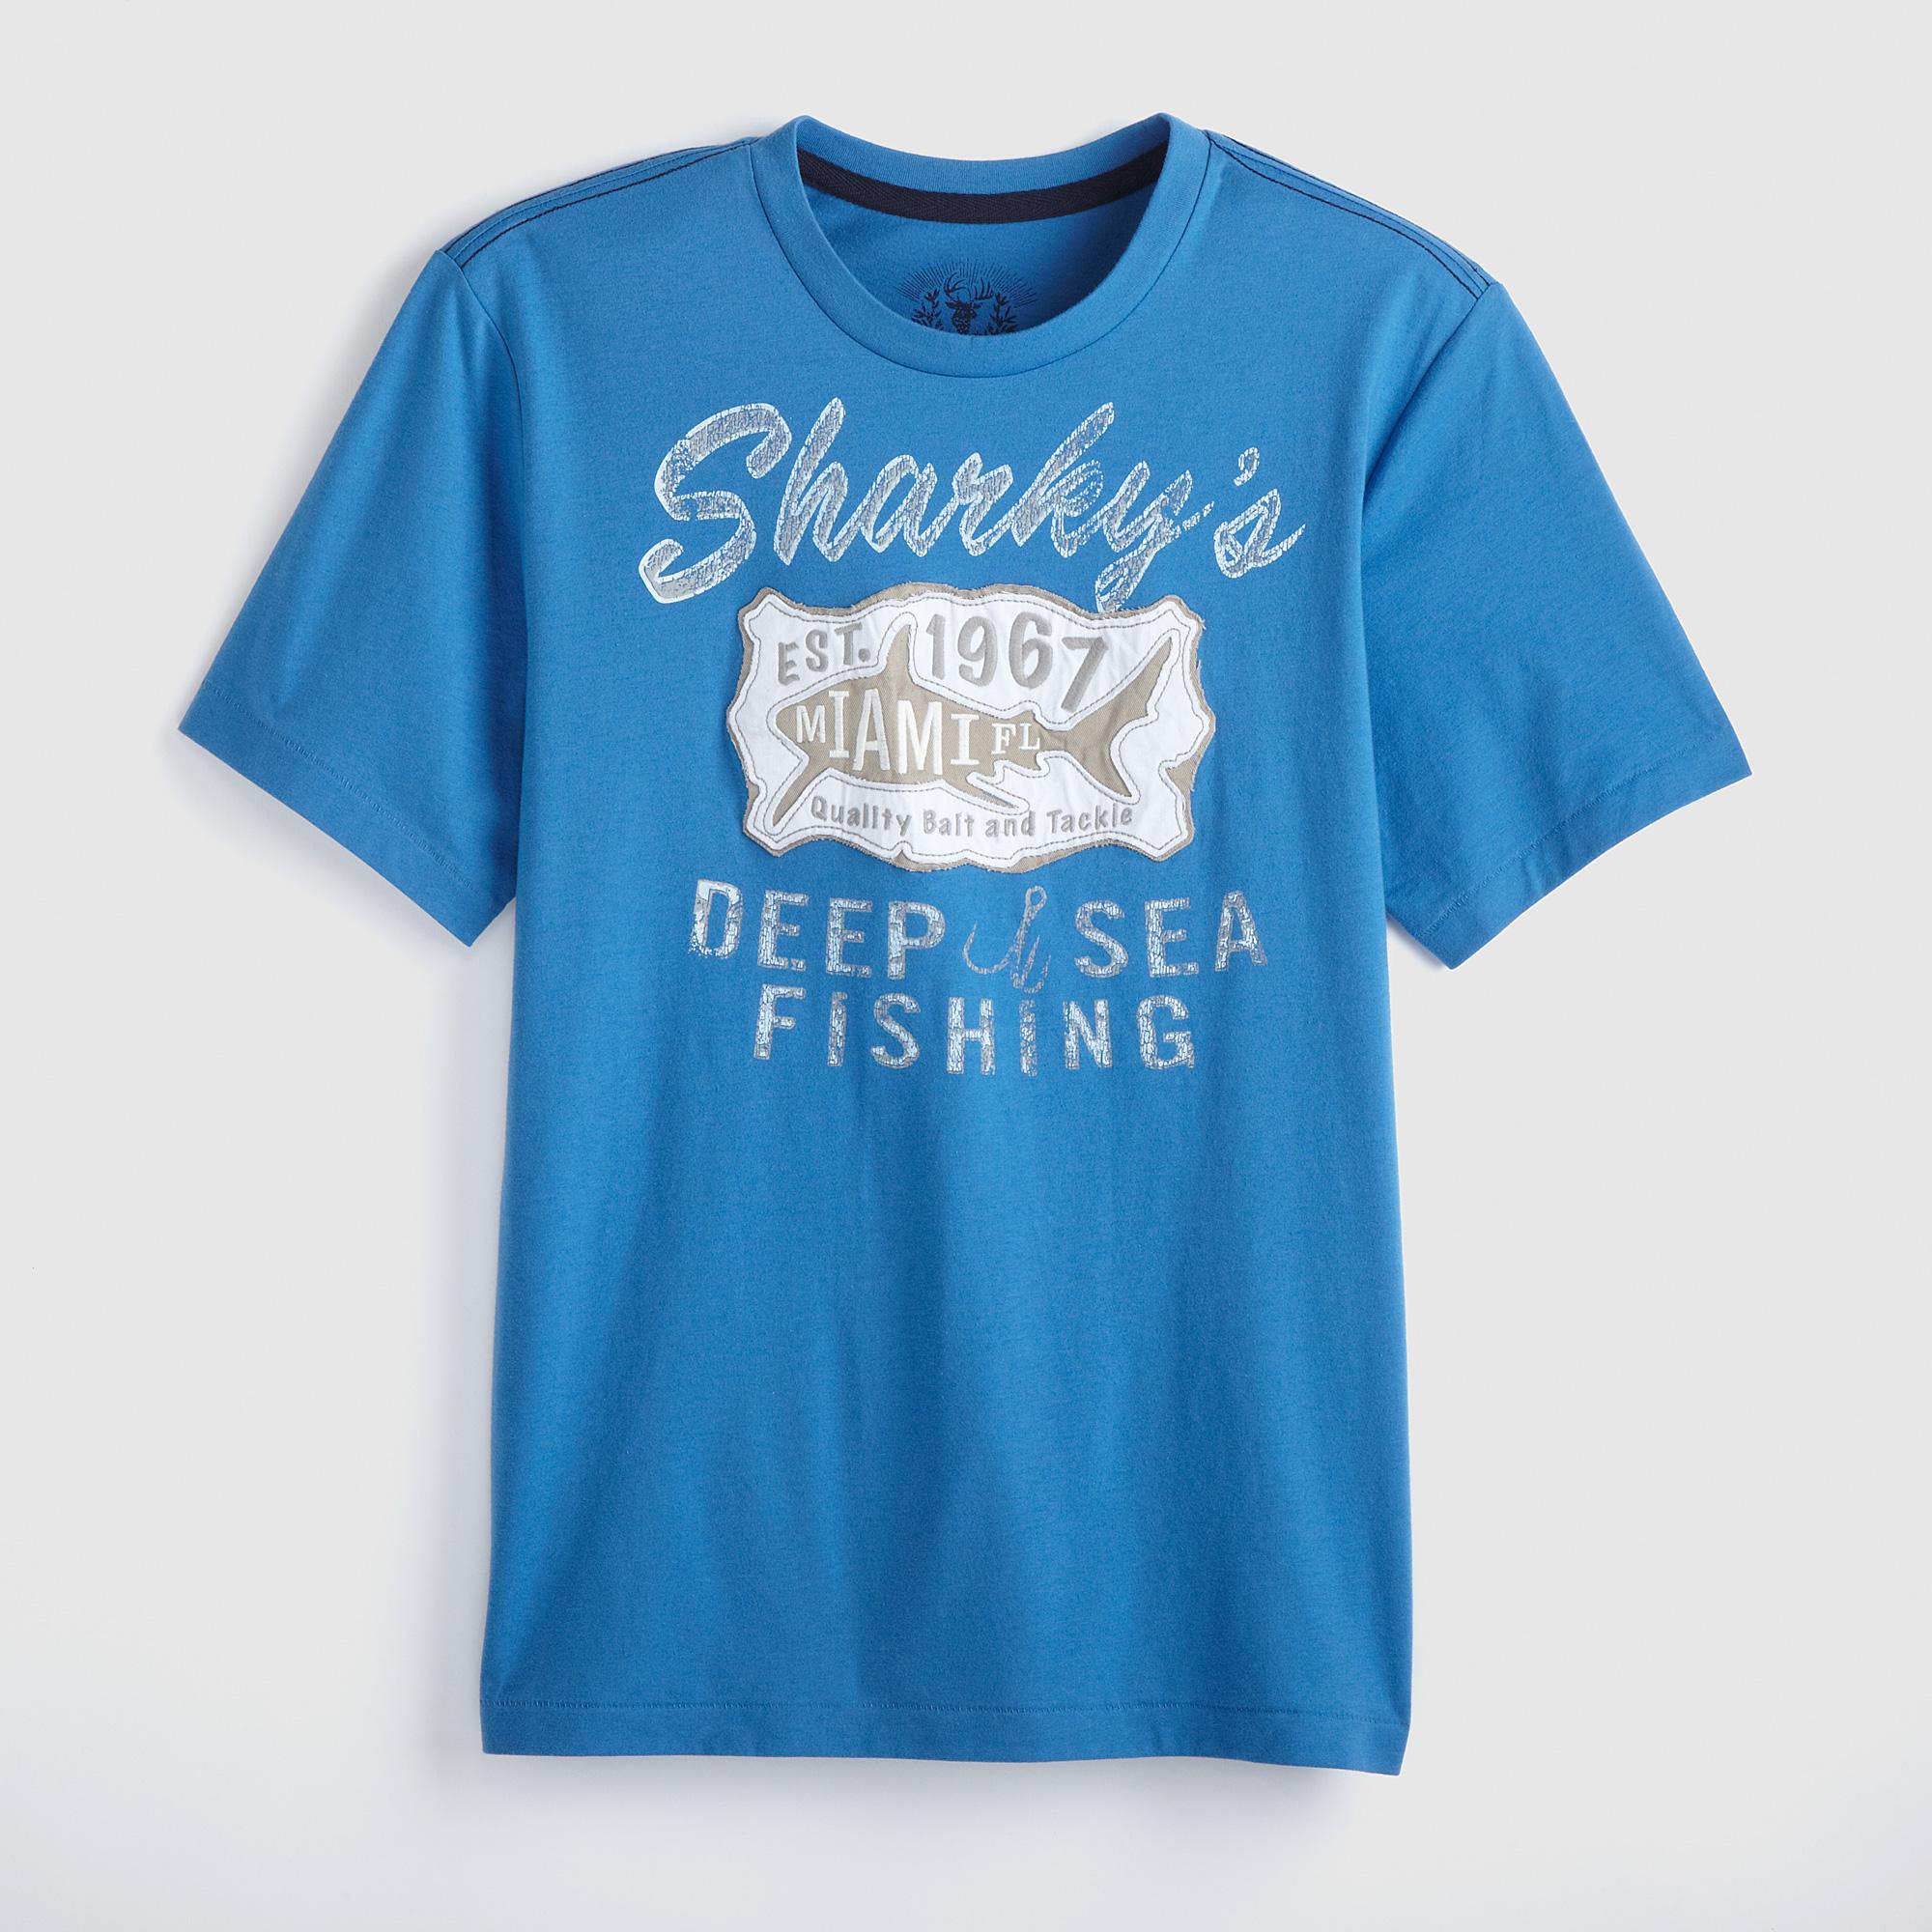 Roebuck & Co. Young Men's Graphic T-Shirt - Fishing